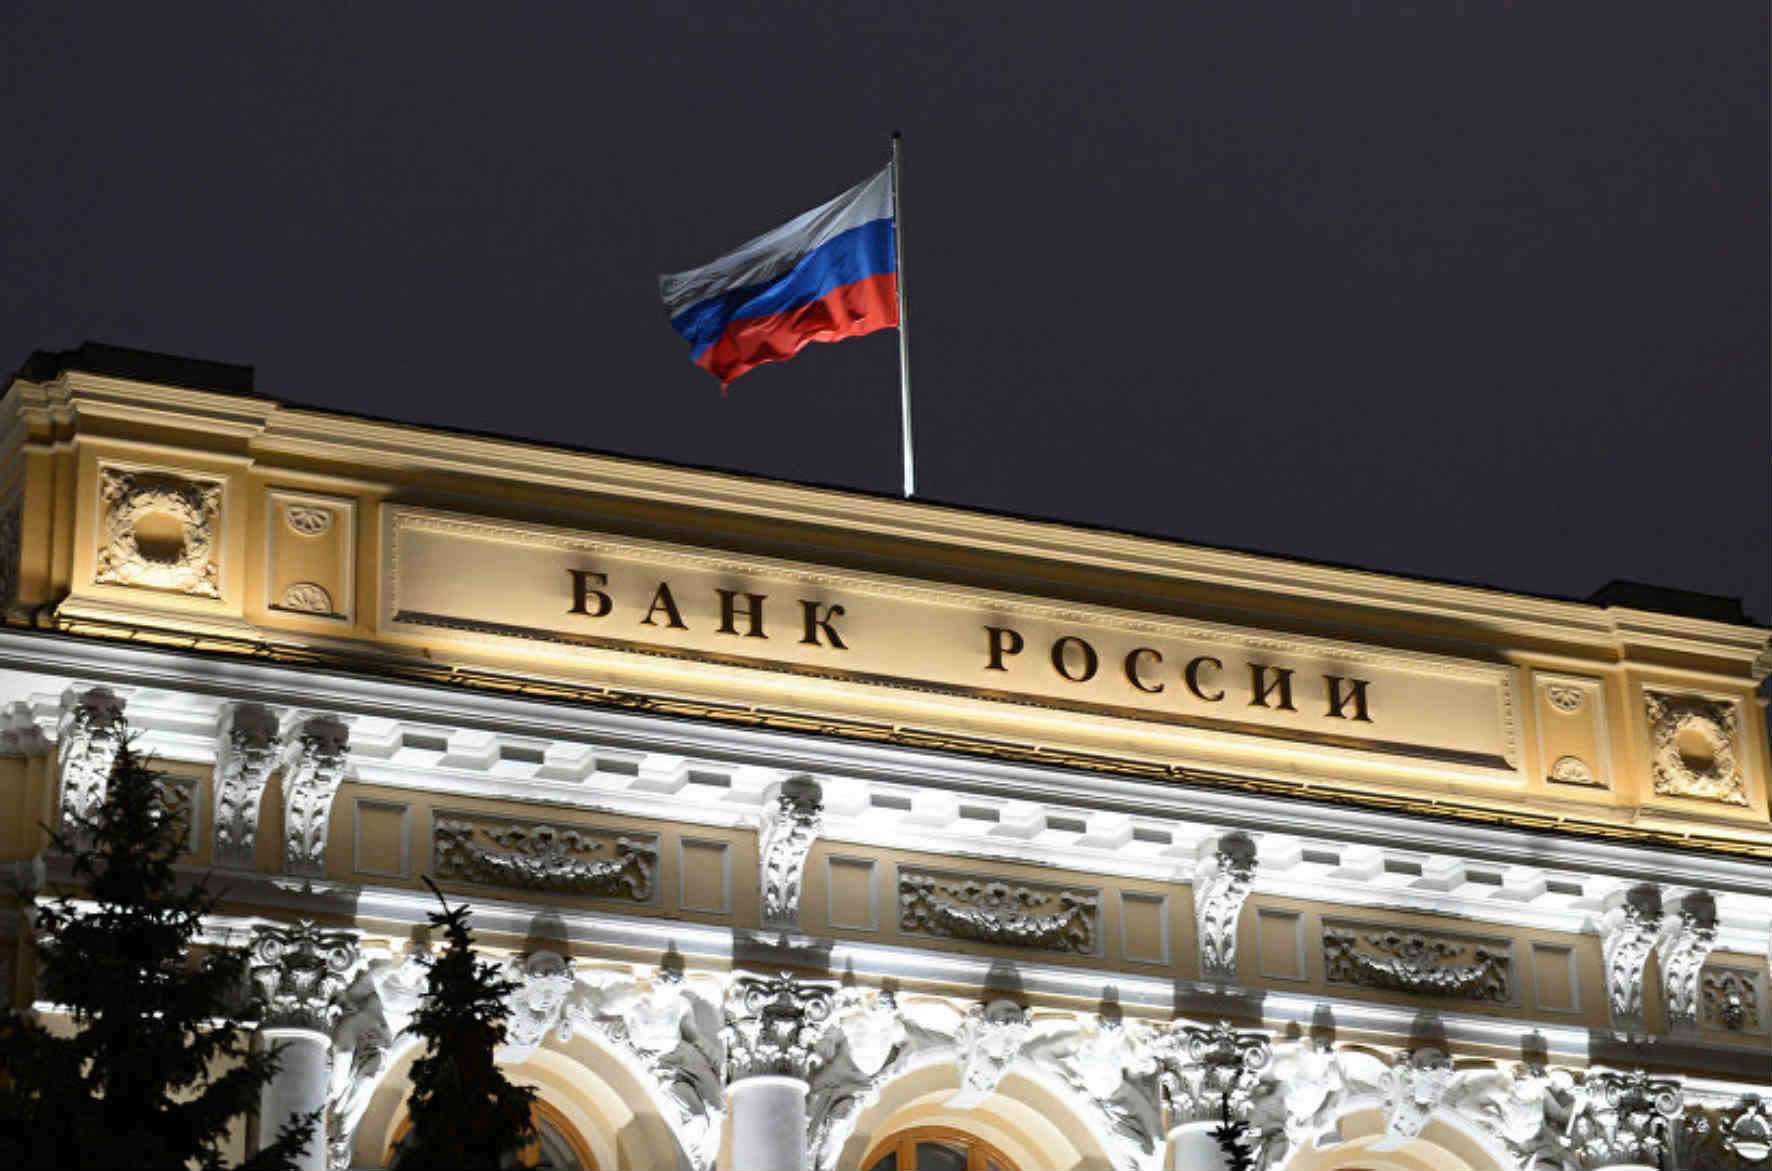 Банк России предупреждает: в сеть утекли данные 55 тысяч клиентов маркетплейса Joom